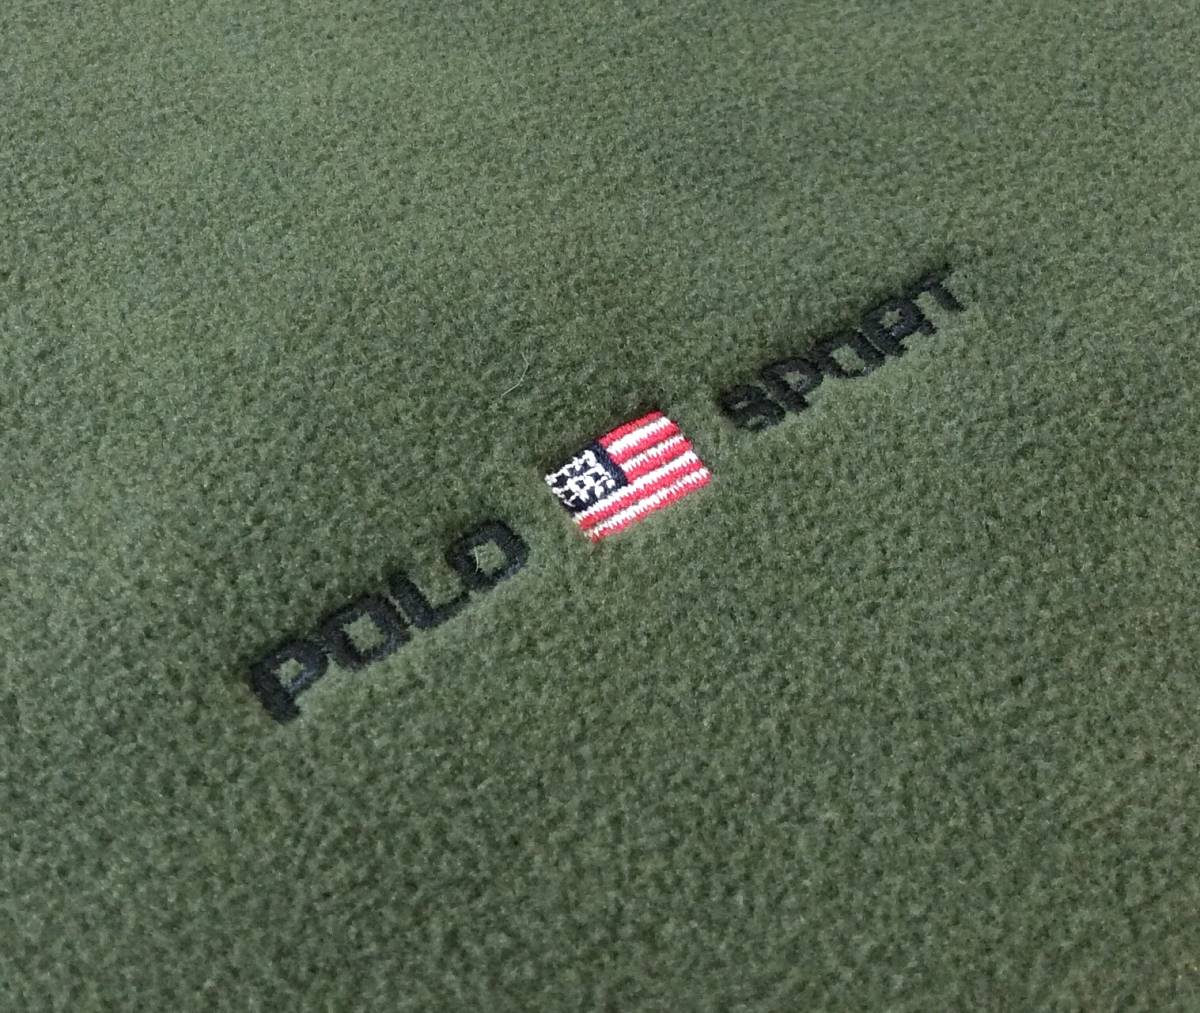 POLO SPORT RALPH LAUREN Polo спорт Ralph Lauren USA производства флис жакет тянуть over тренировочный оливковый зеленый мужской XL